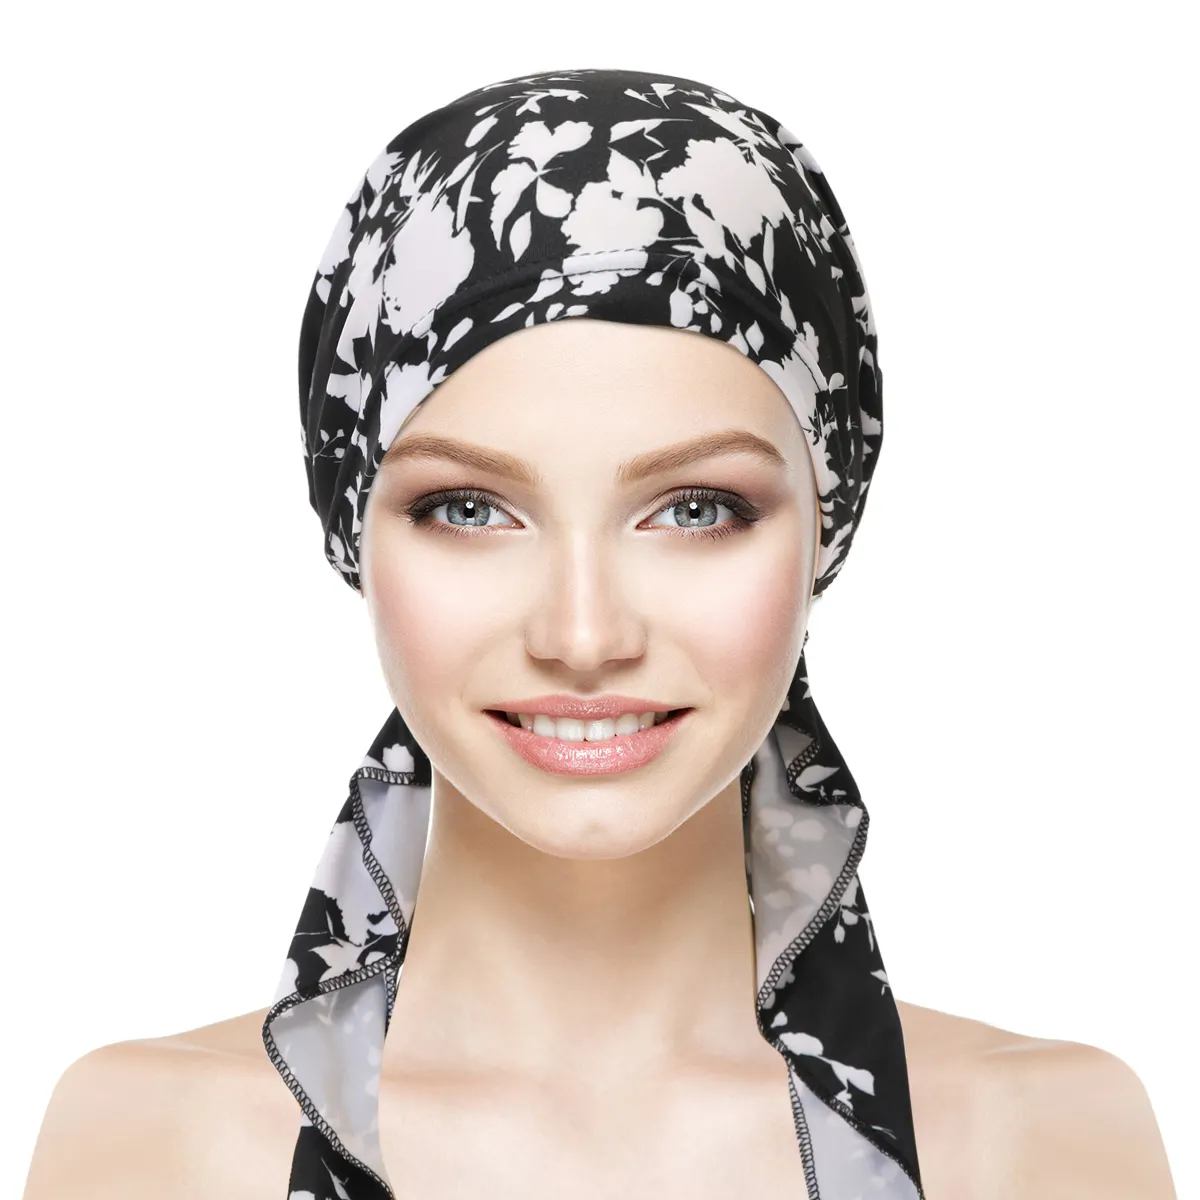 Chapéus hijabs muçulmanos piratas estilo moda chapéus femininos com cauda de algodão e elastano coloridos hijabs frete grátis